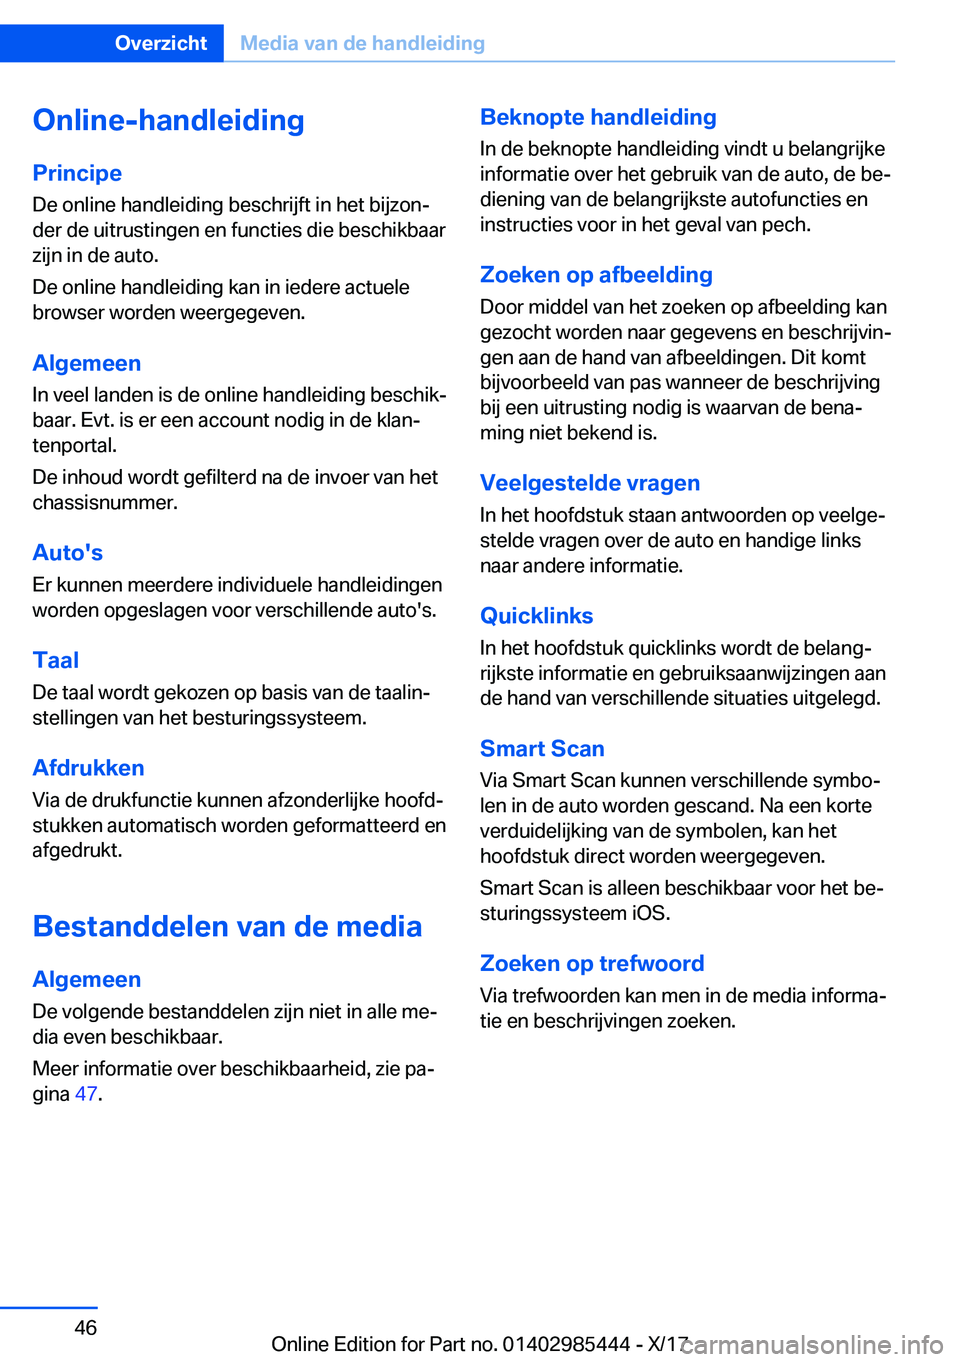 BMW X1 2018  Instructieboekjes (in Dutch) �O�n�l�i�n�e�-�h�a�n�d�l�e�i�d�i�n�g�P�r�i�n�c�i�p�e �D�e� �o�n�l�i�n�e� �h�a�n�d�l�e�i�d�i�n�g� �b�e�s�c�h�r�i�j�f�t� �i�n� �h�e�t� �b�i�j�z�o�nj
�d�e�r� �d�e� �u�i�t�r�u�s�t�i�n�g�e�n� �e�n� �f�u�n